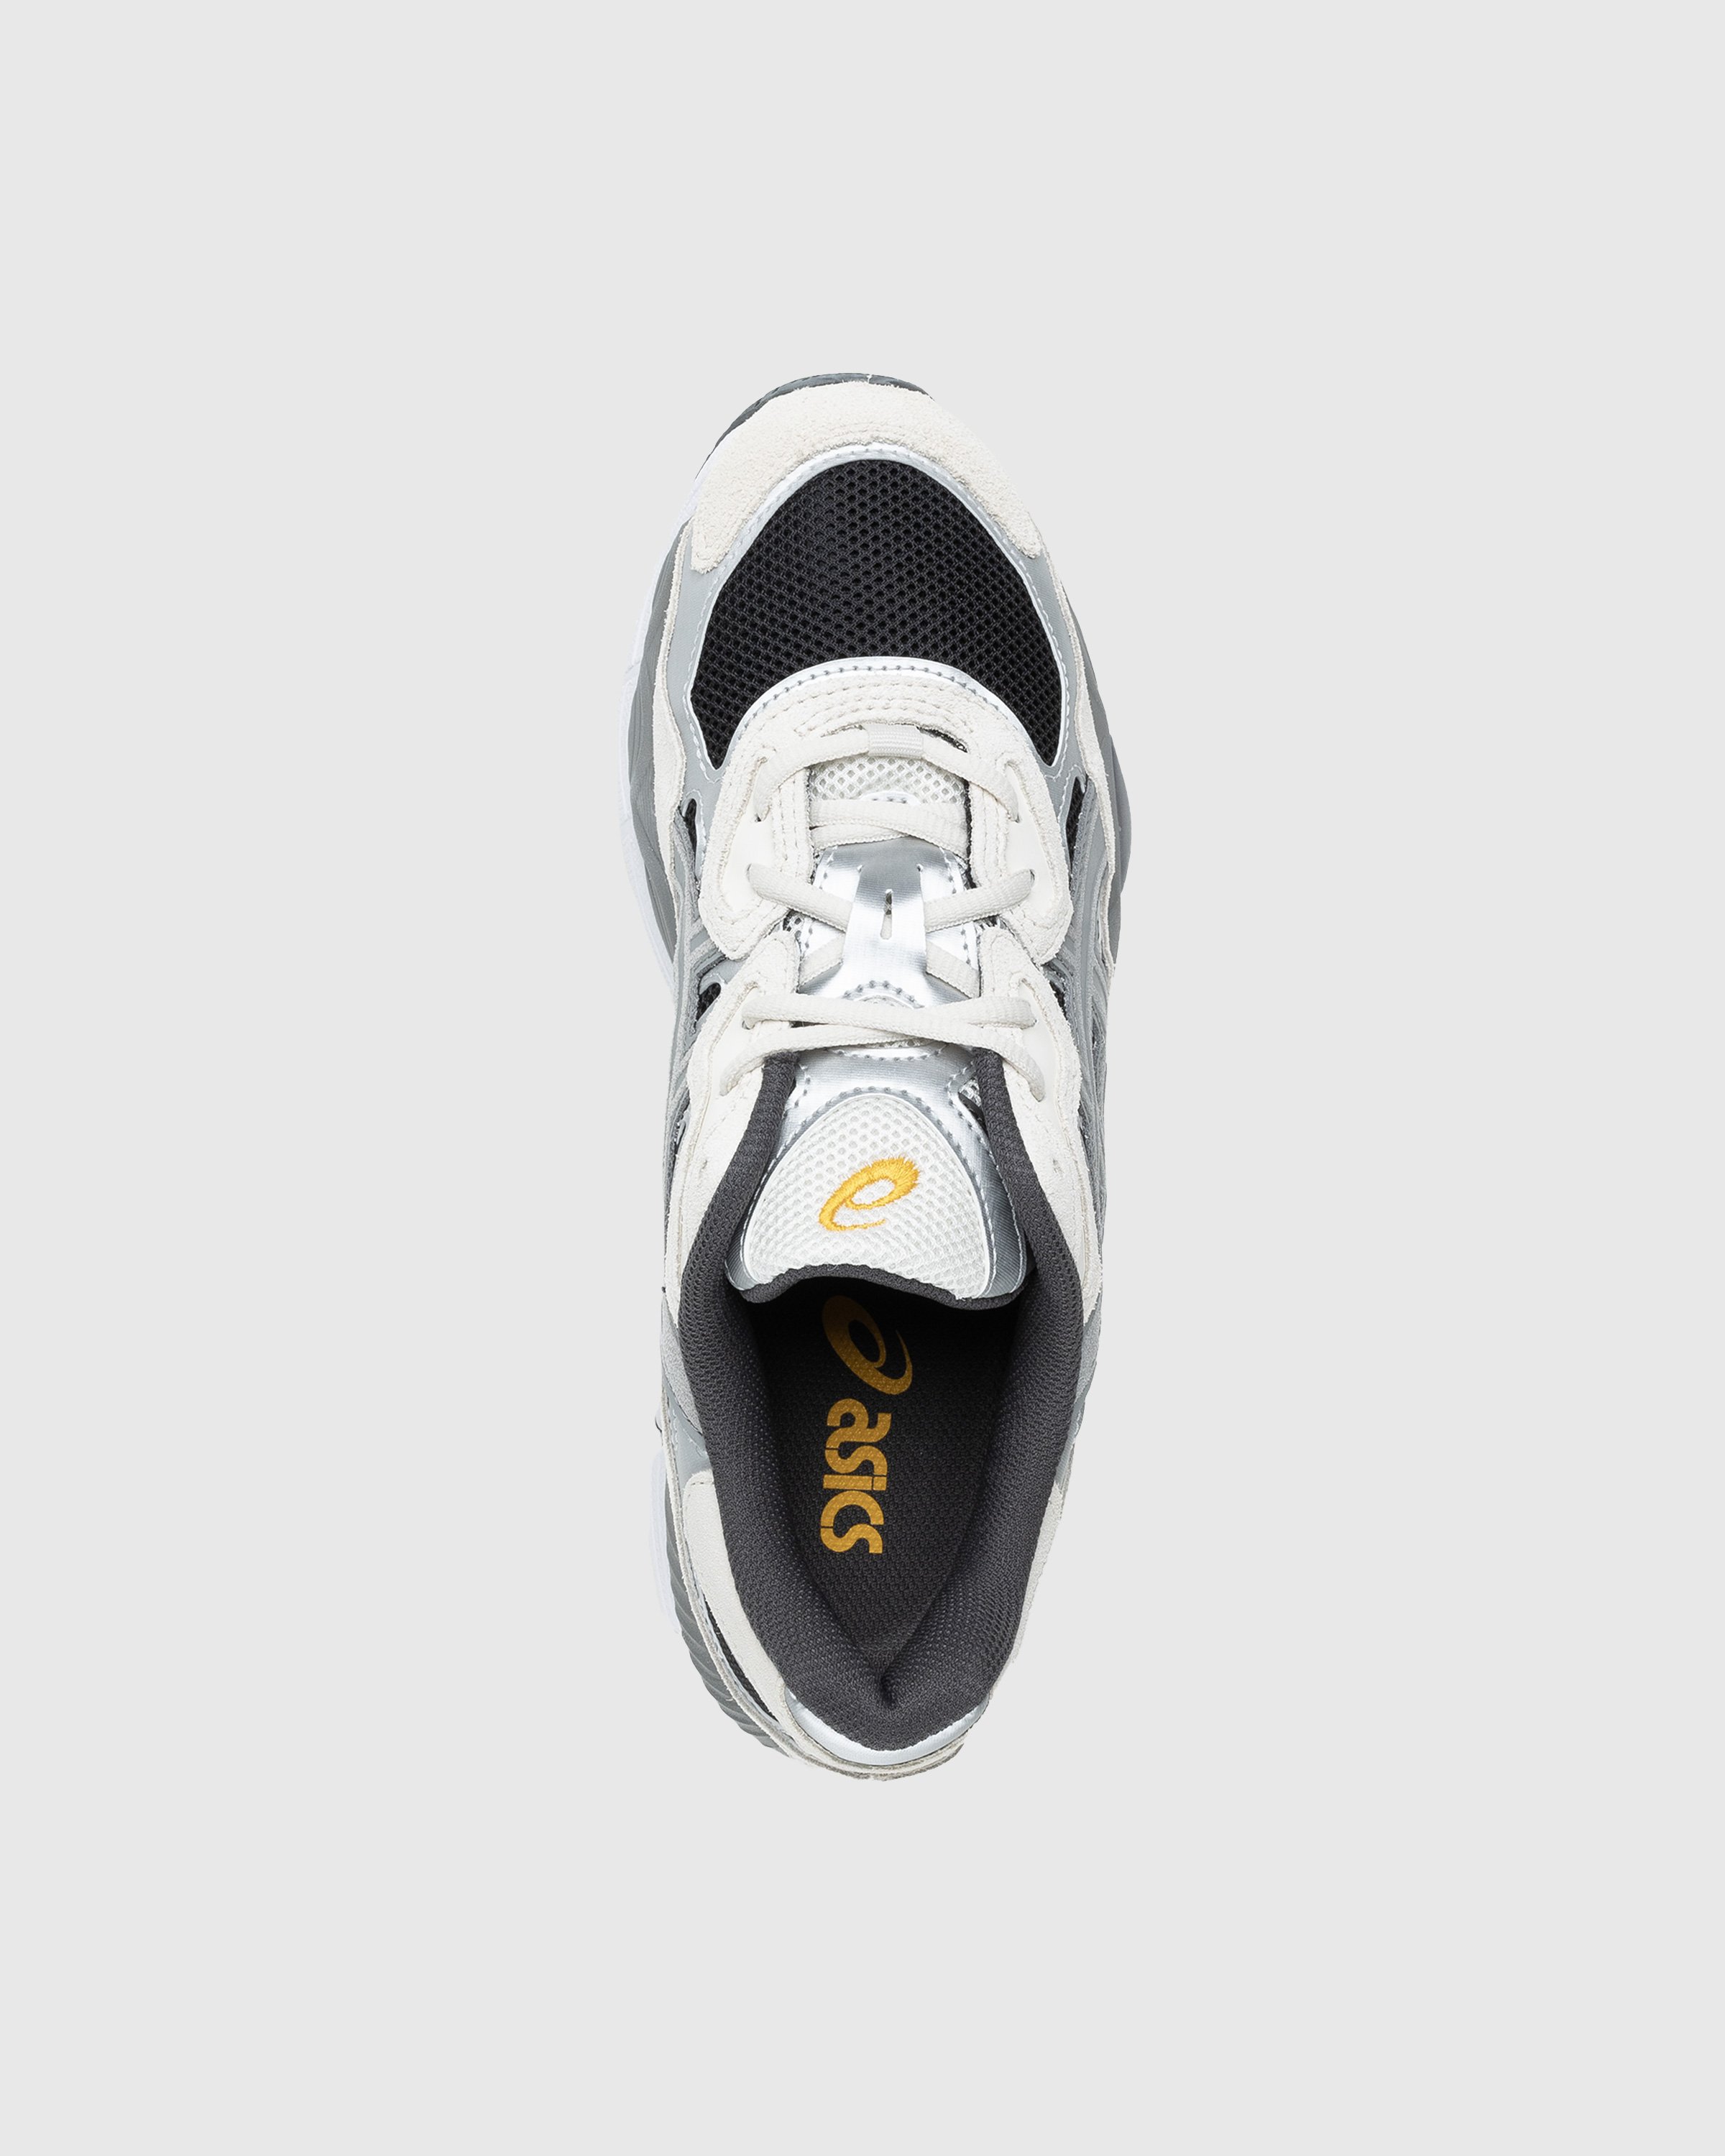 asics - GEL-NYC Black/Clay Grey - Footwear - Grey - Image 5